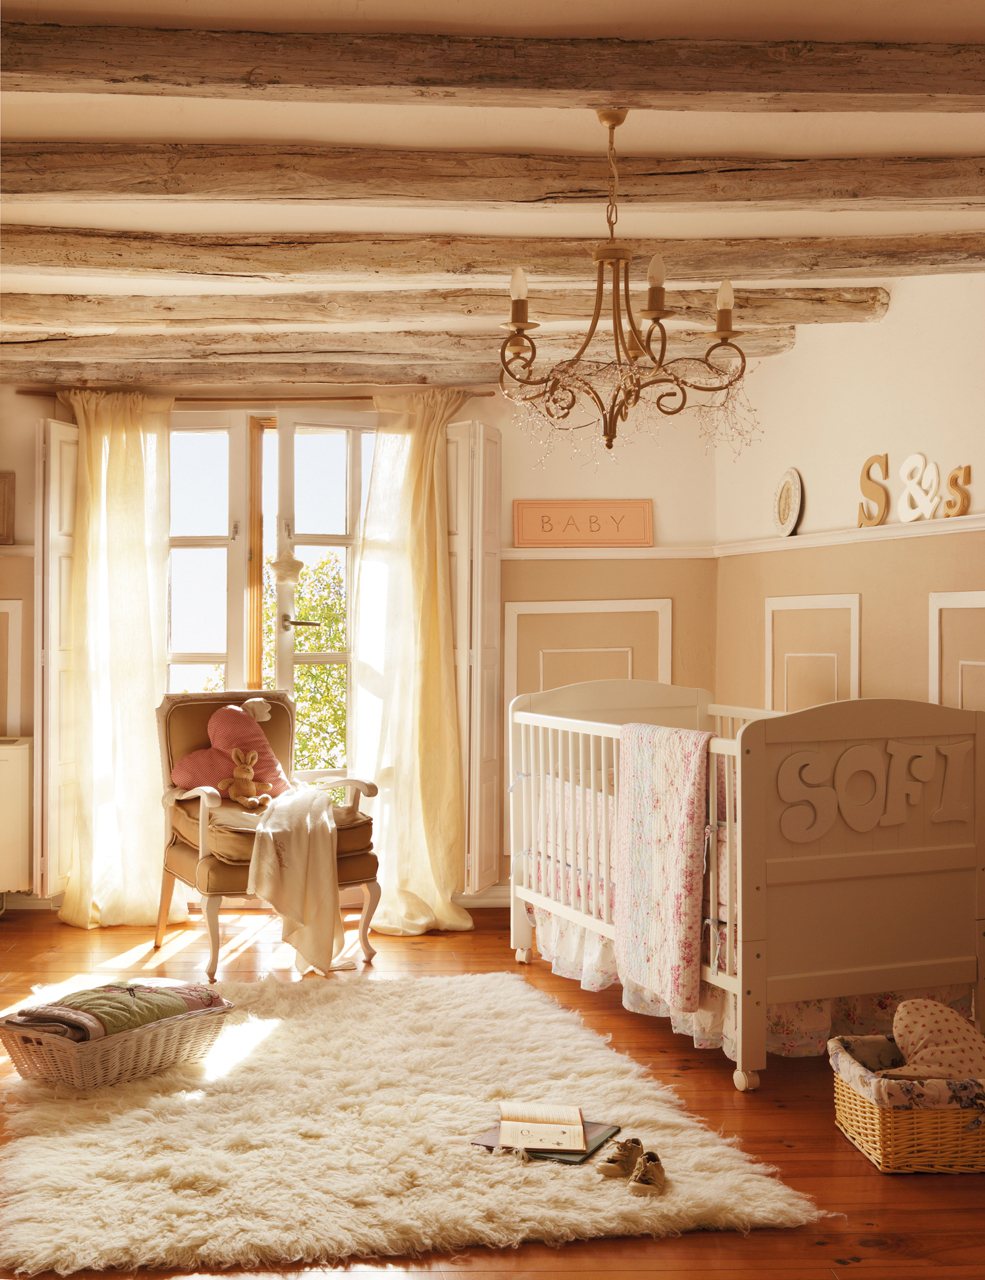 لتزيين سقف غرفة الطفل بأسلوب بروفانس ، تعتبر الحزم المزخرفة ذات المعالجة غير المتساوية للون البني الفاتح مثالية